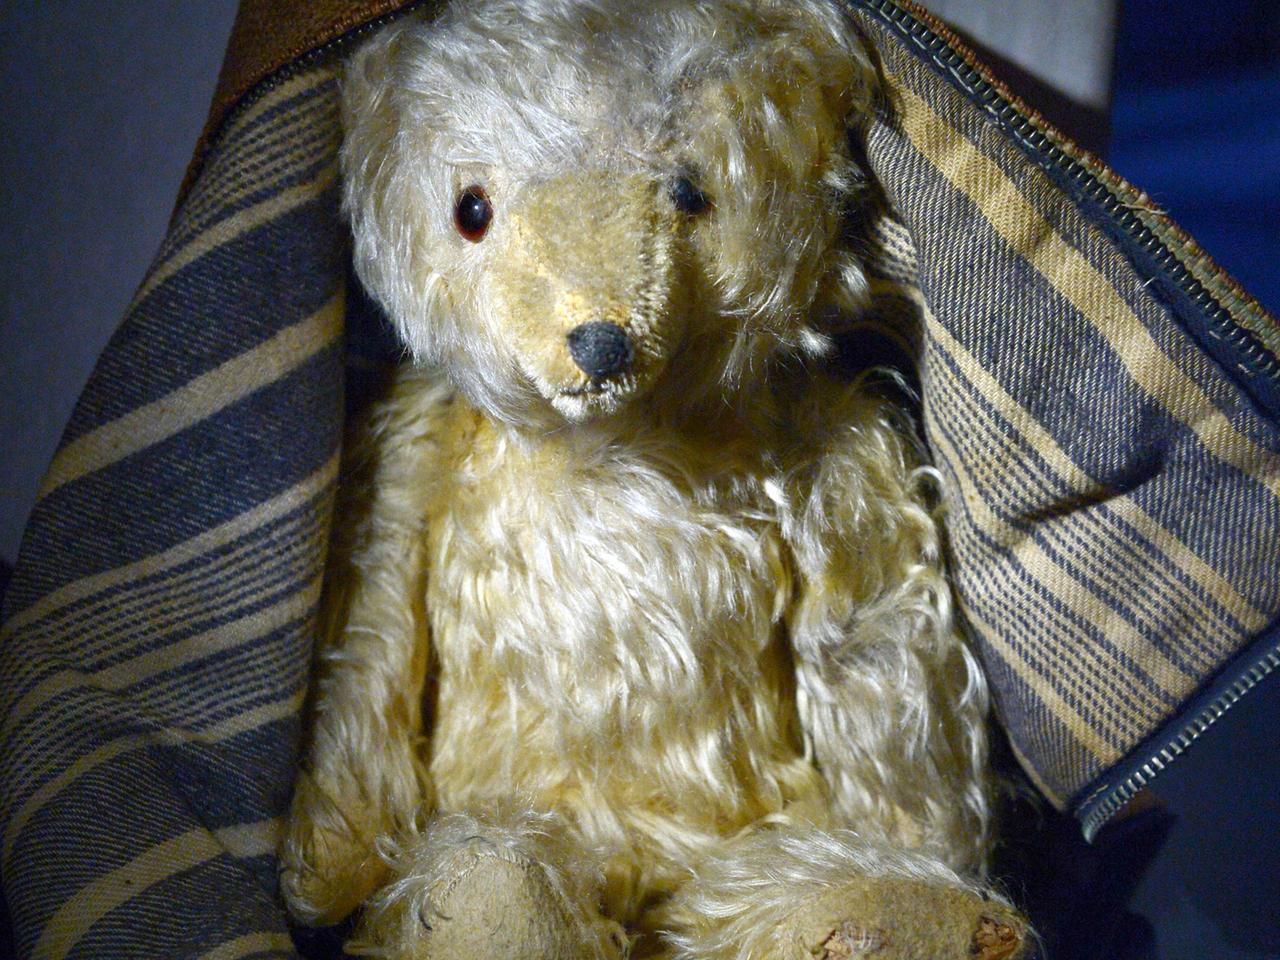 Der Teddybär "Goldbrummerle" des Schriftstellers Arno Schmidt liegt am 02.05.2014 in einer Vitrine im Bomann Museum in Celle (Niedersachsen).